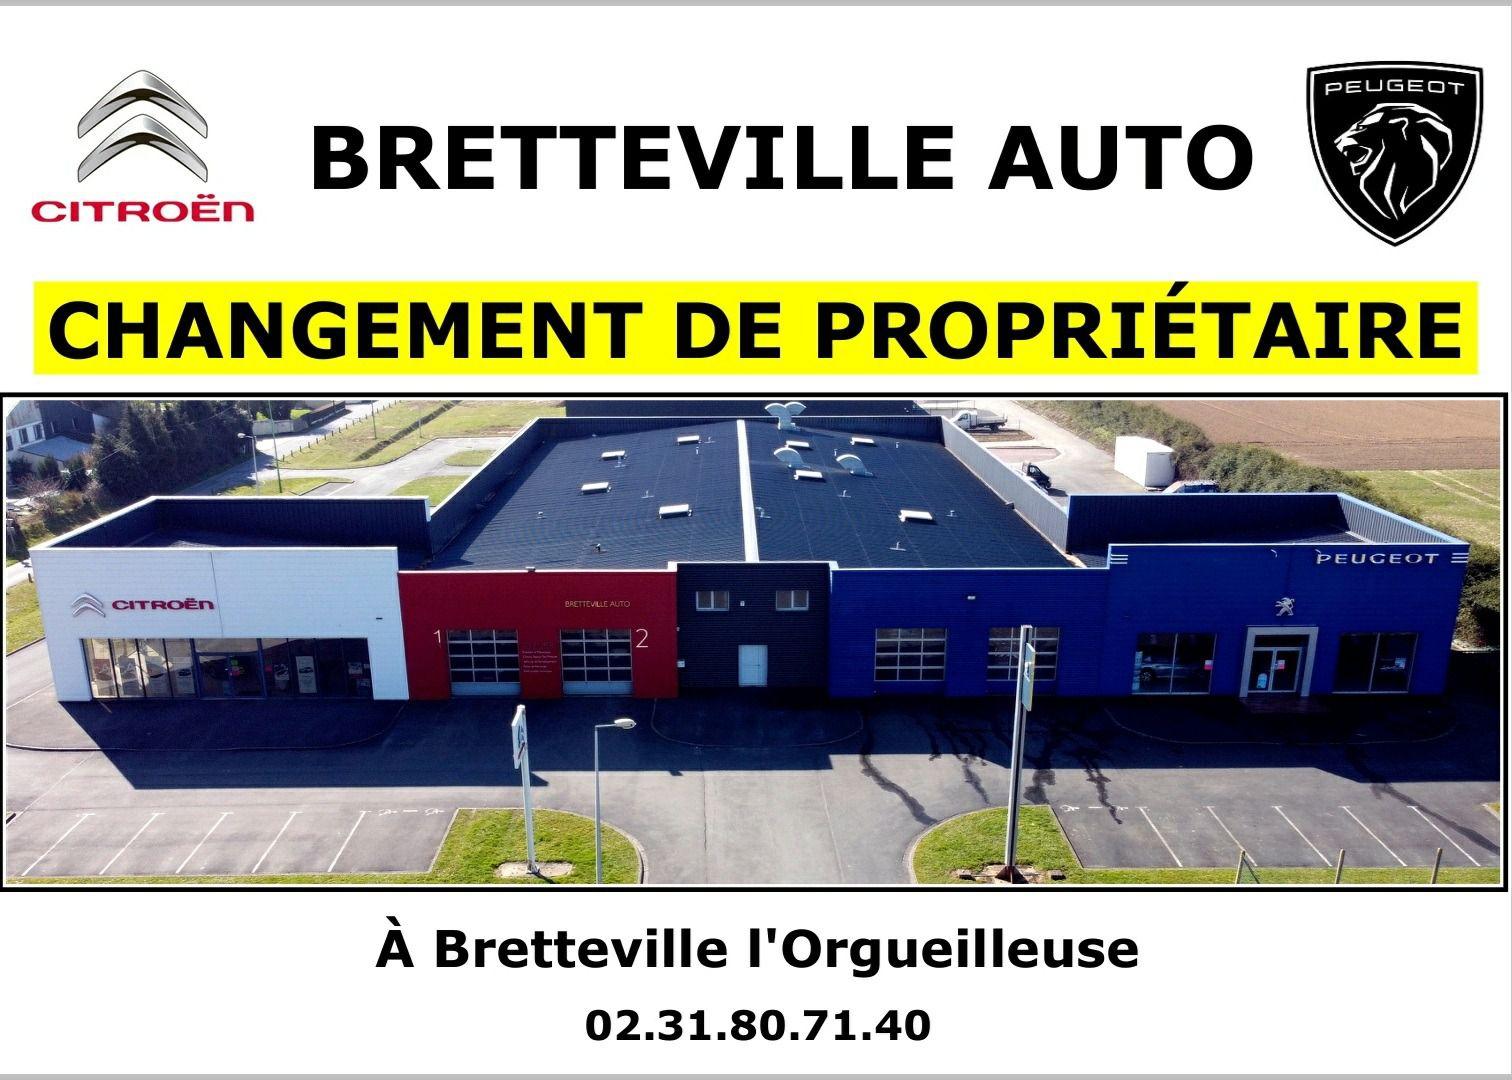 Bretteville Auto Agent Peugeot Citroen Thue Et Mue